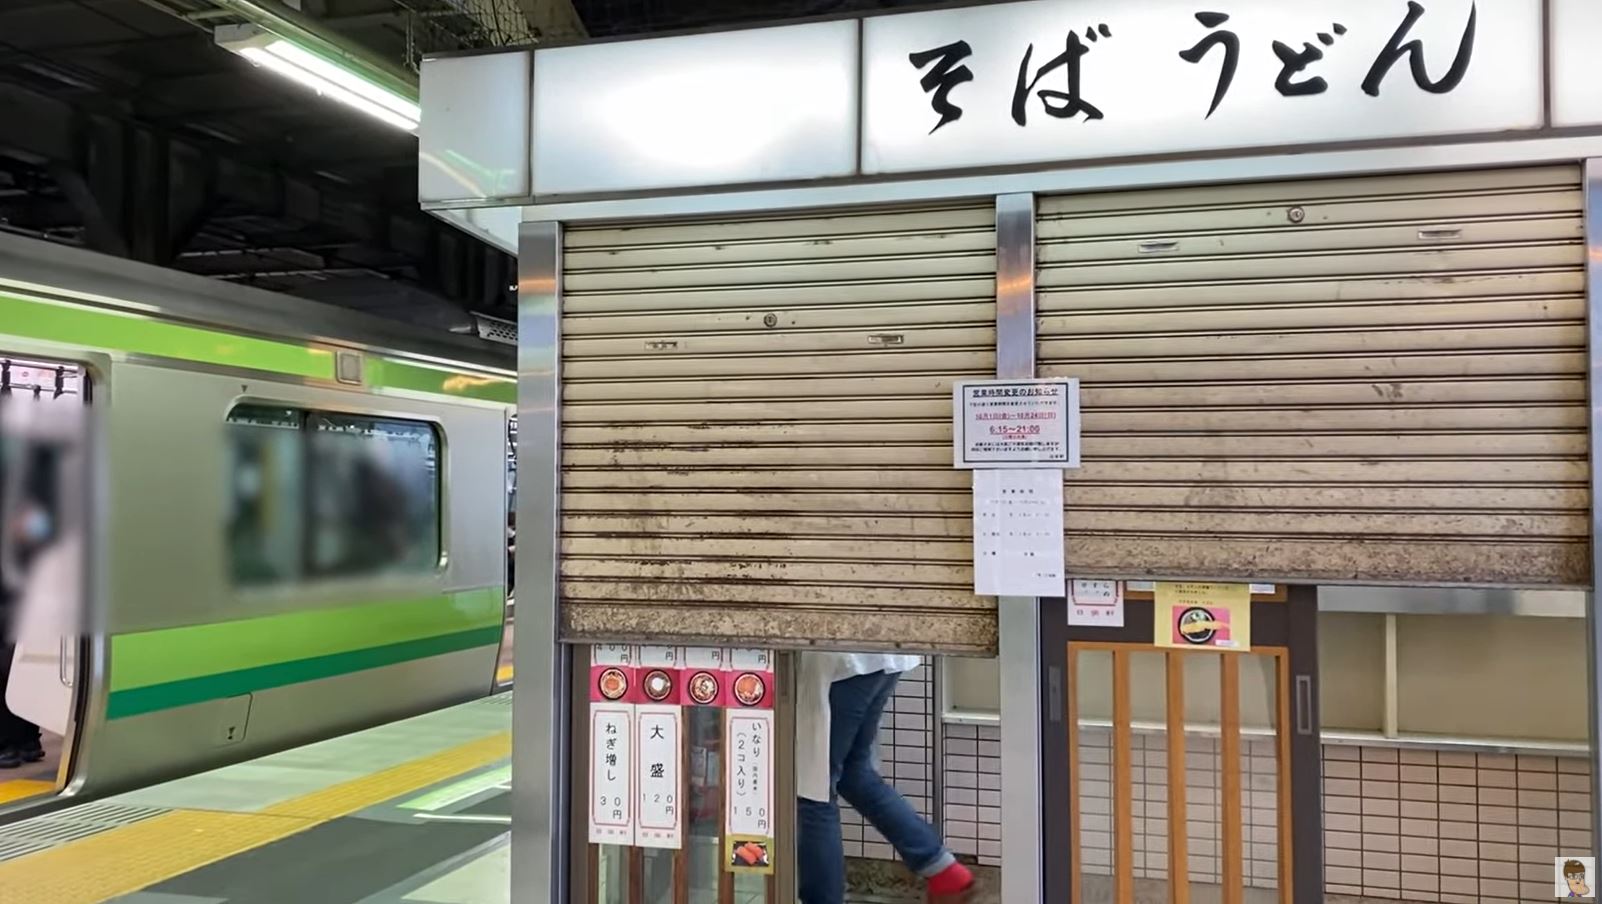 東神奈川駅の 日本一のジャンボが出てくる 駅そばに仰天 電車待つ間にサッと食えるサイズじゃないぞ 1 2 ページ ねとらぼ